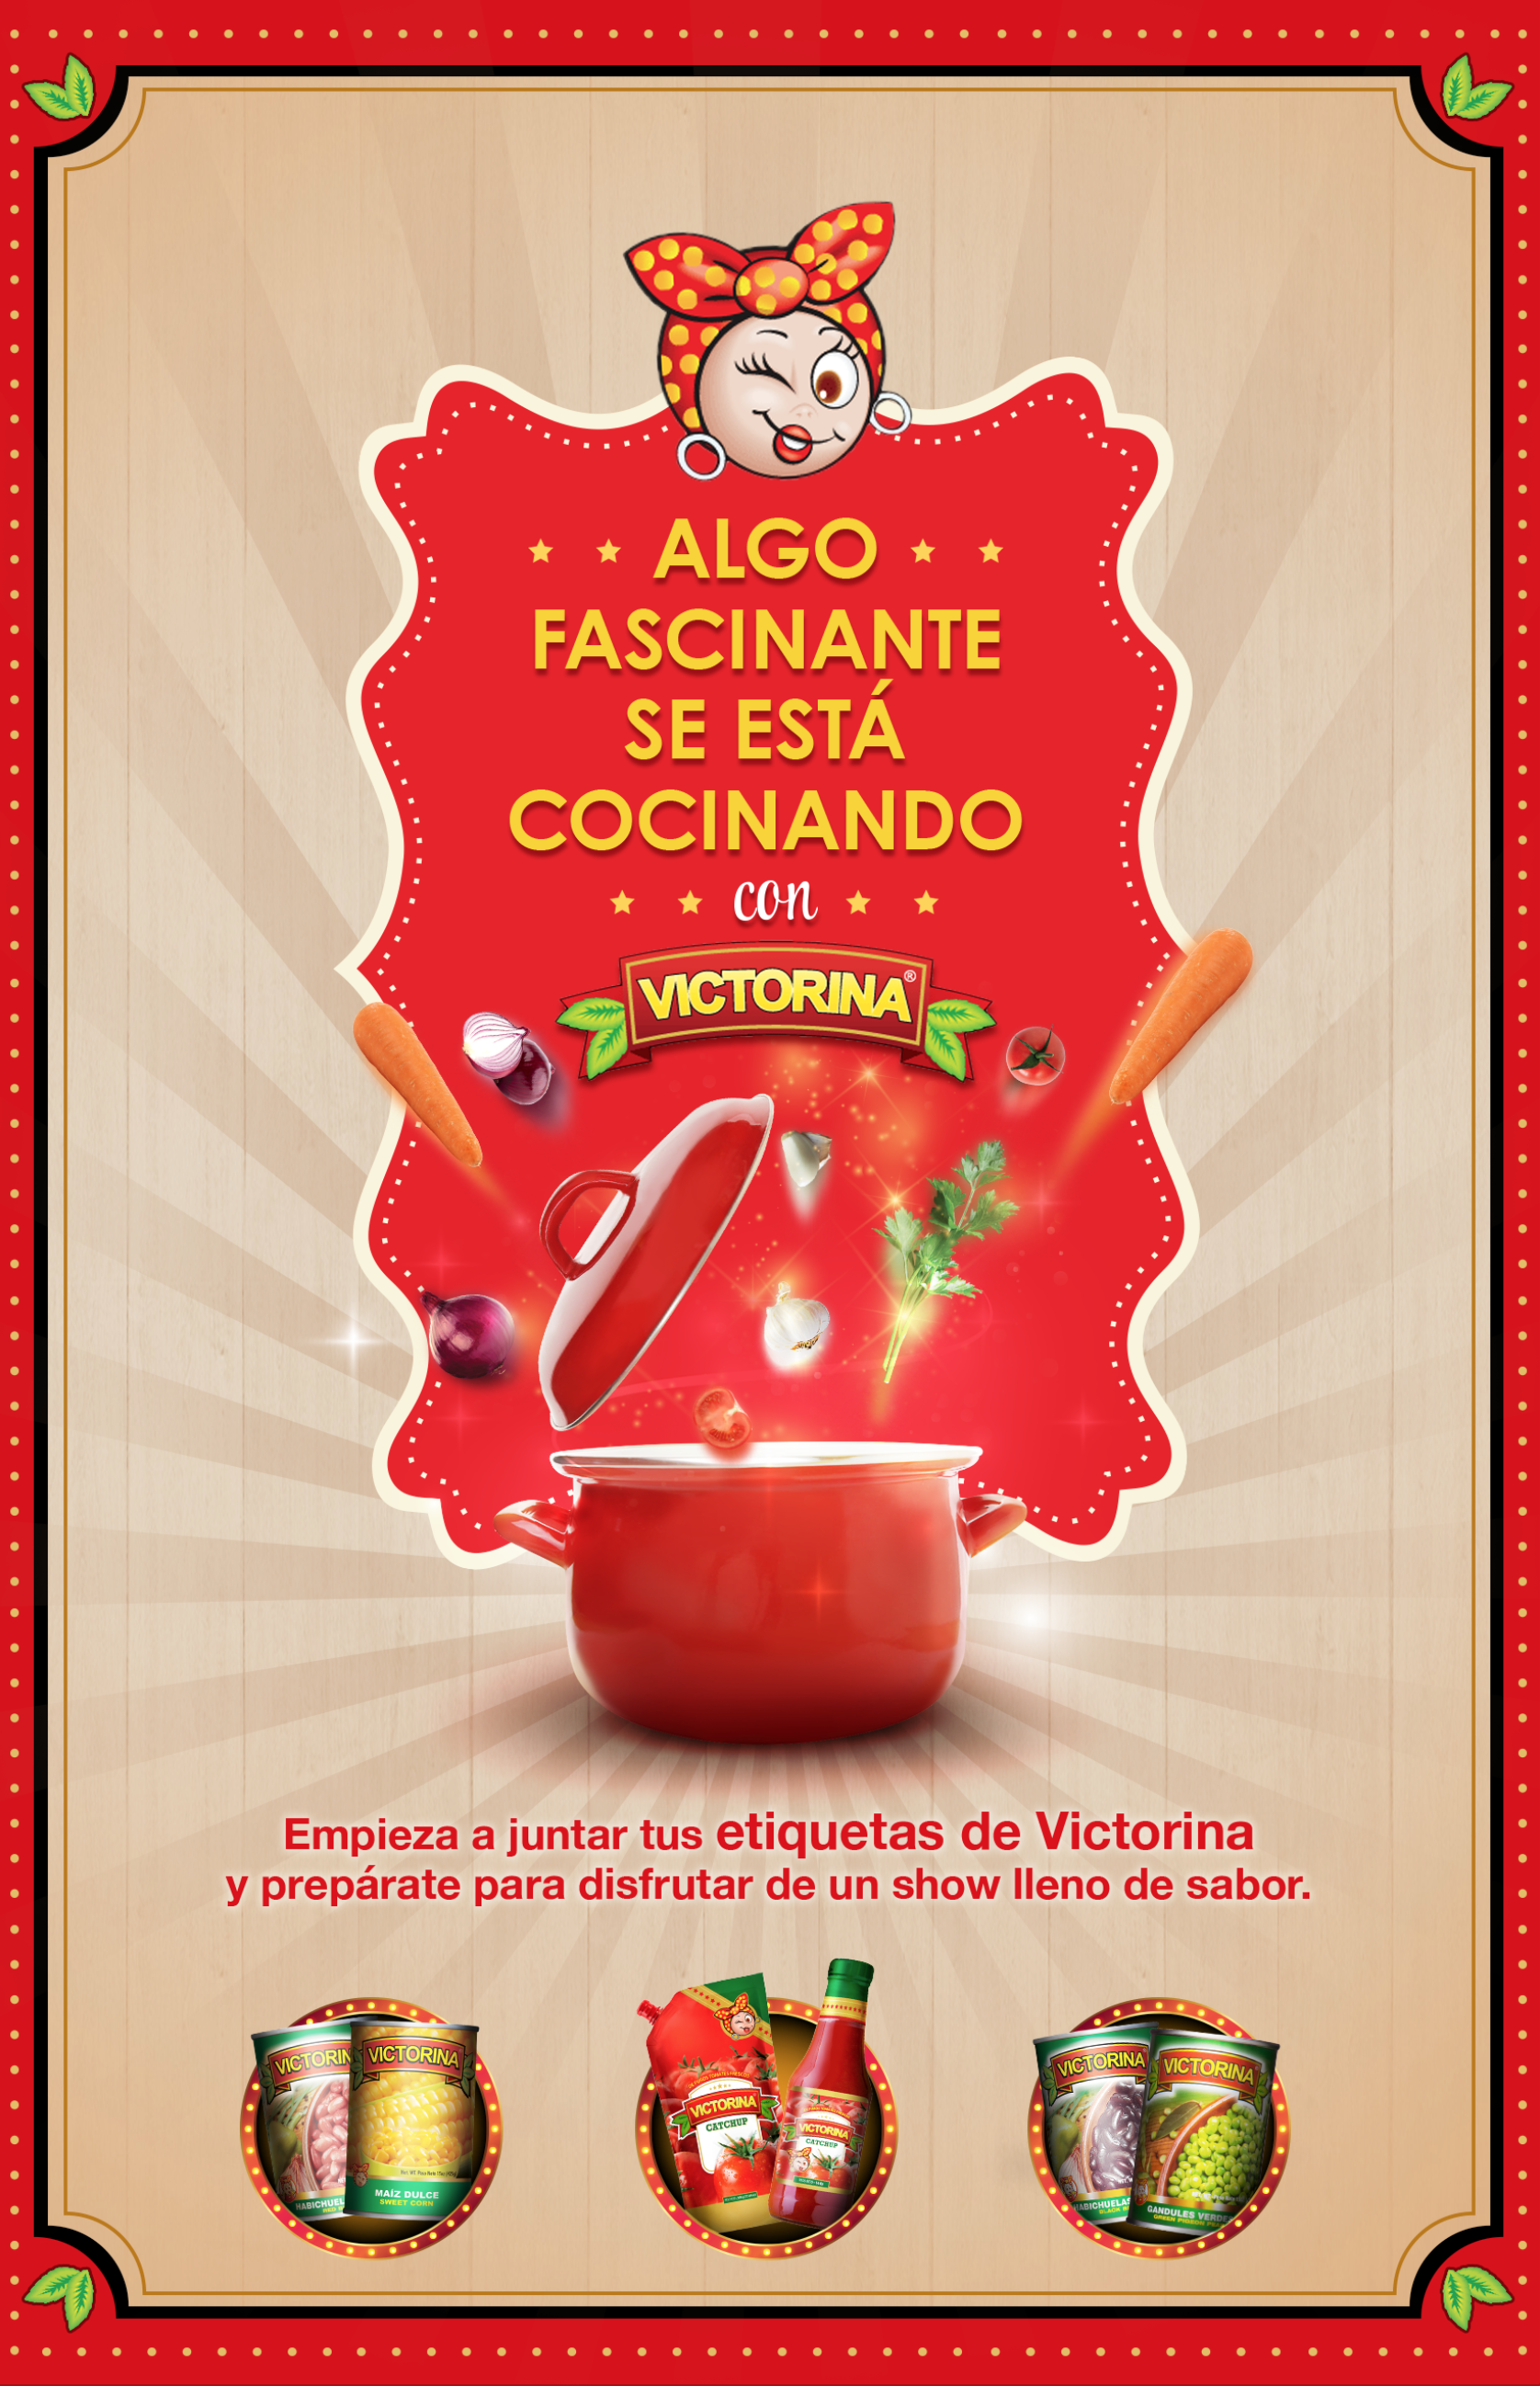 + « ALGO + +
FASCINANTE
SE ESTA

COCINANDO
SR 2 (FR

Empieza a juntar tus etiquetas de Victorina
y preparate para disfrutar de un show lleno de sabor.